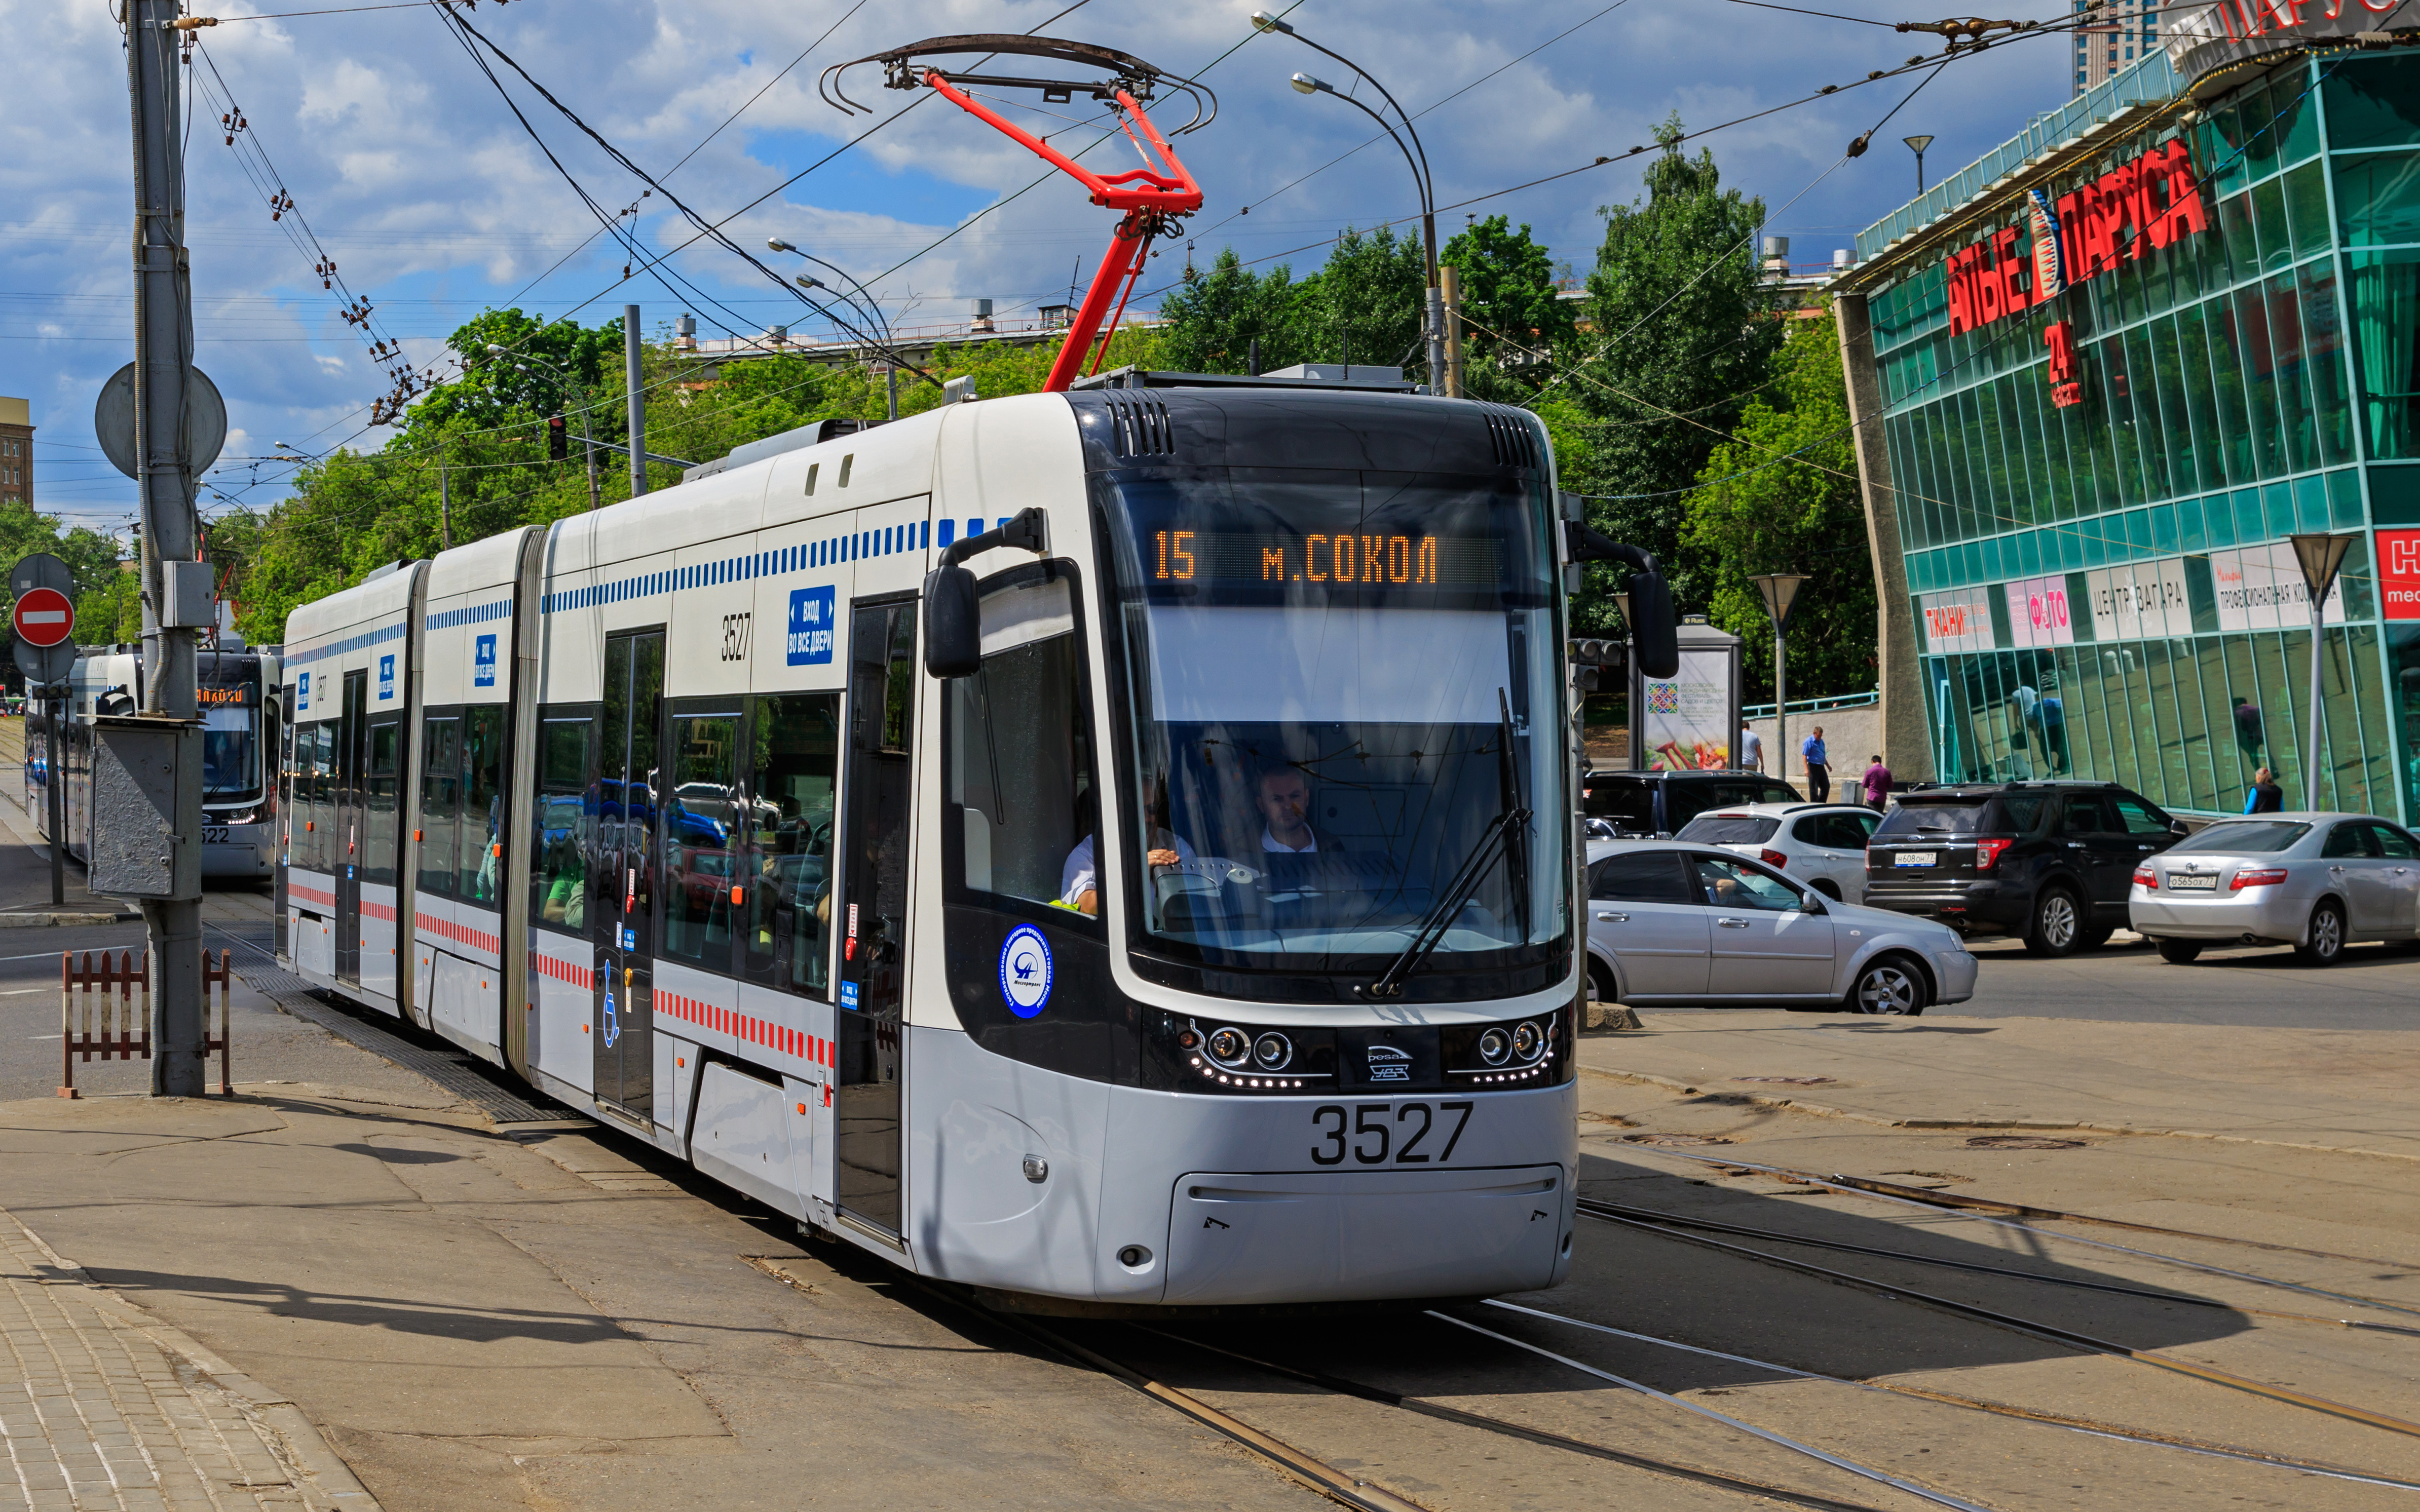 PESA tram at Shchukinskaya 06-2015